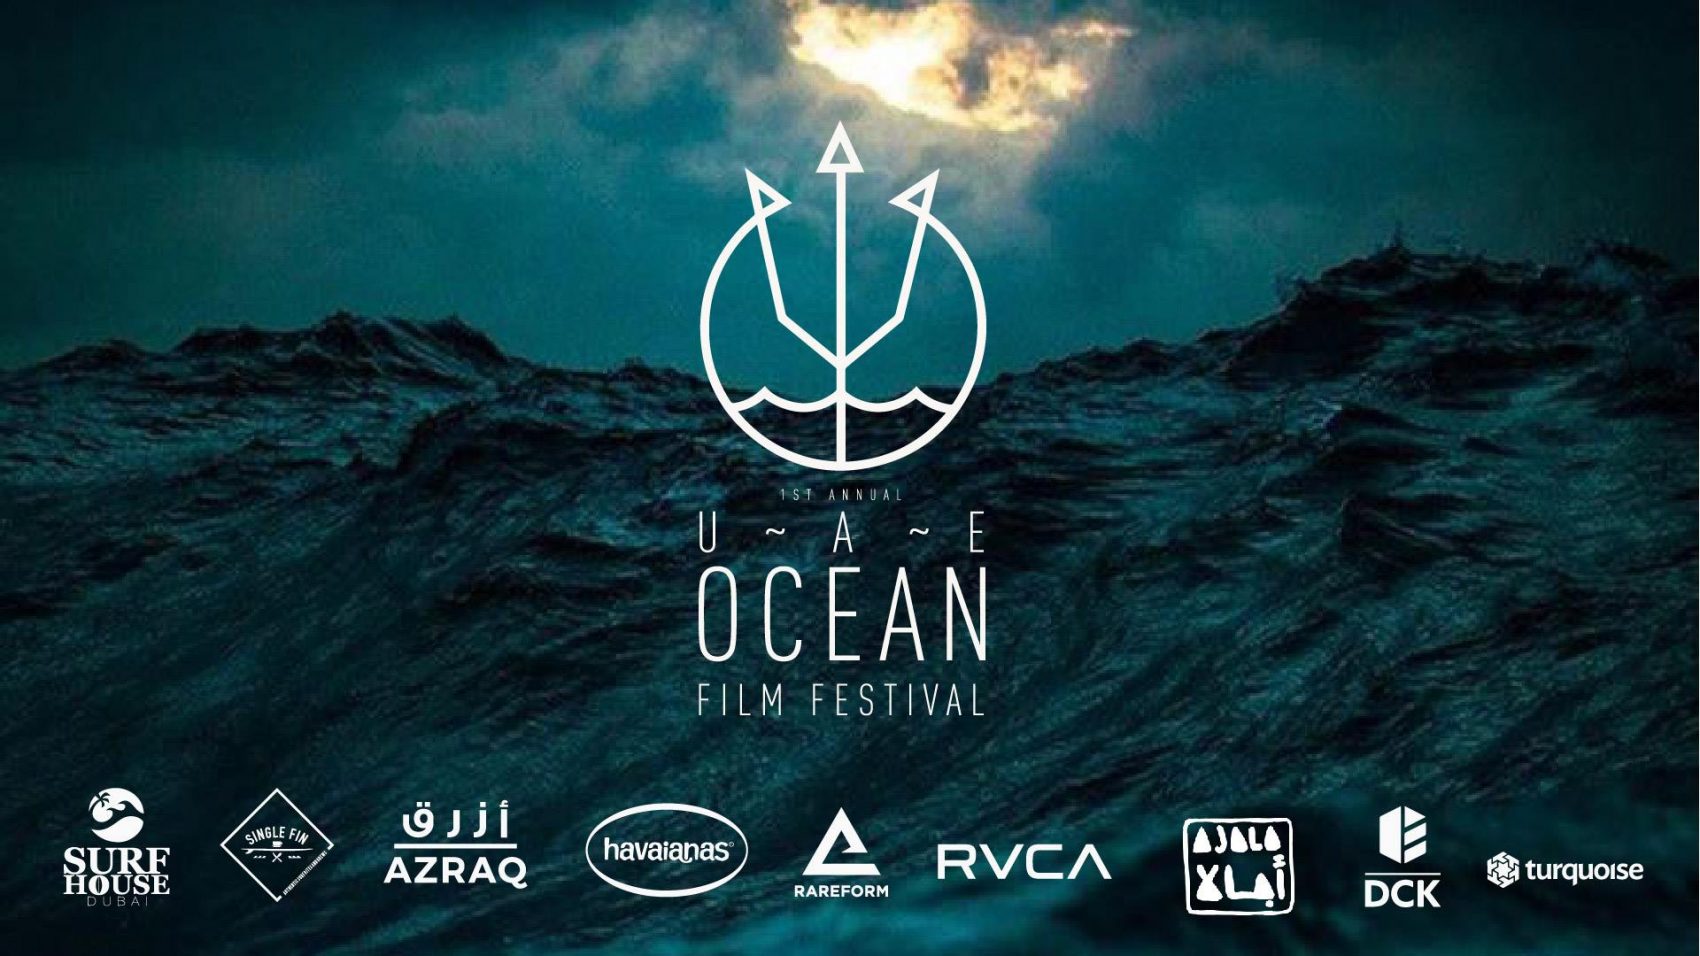 Ocean Film Festival - Coming Soon in UAE